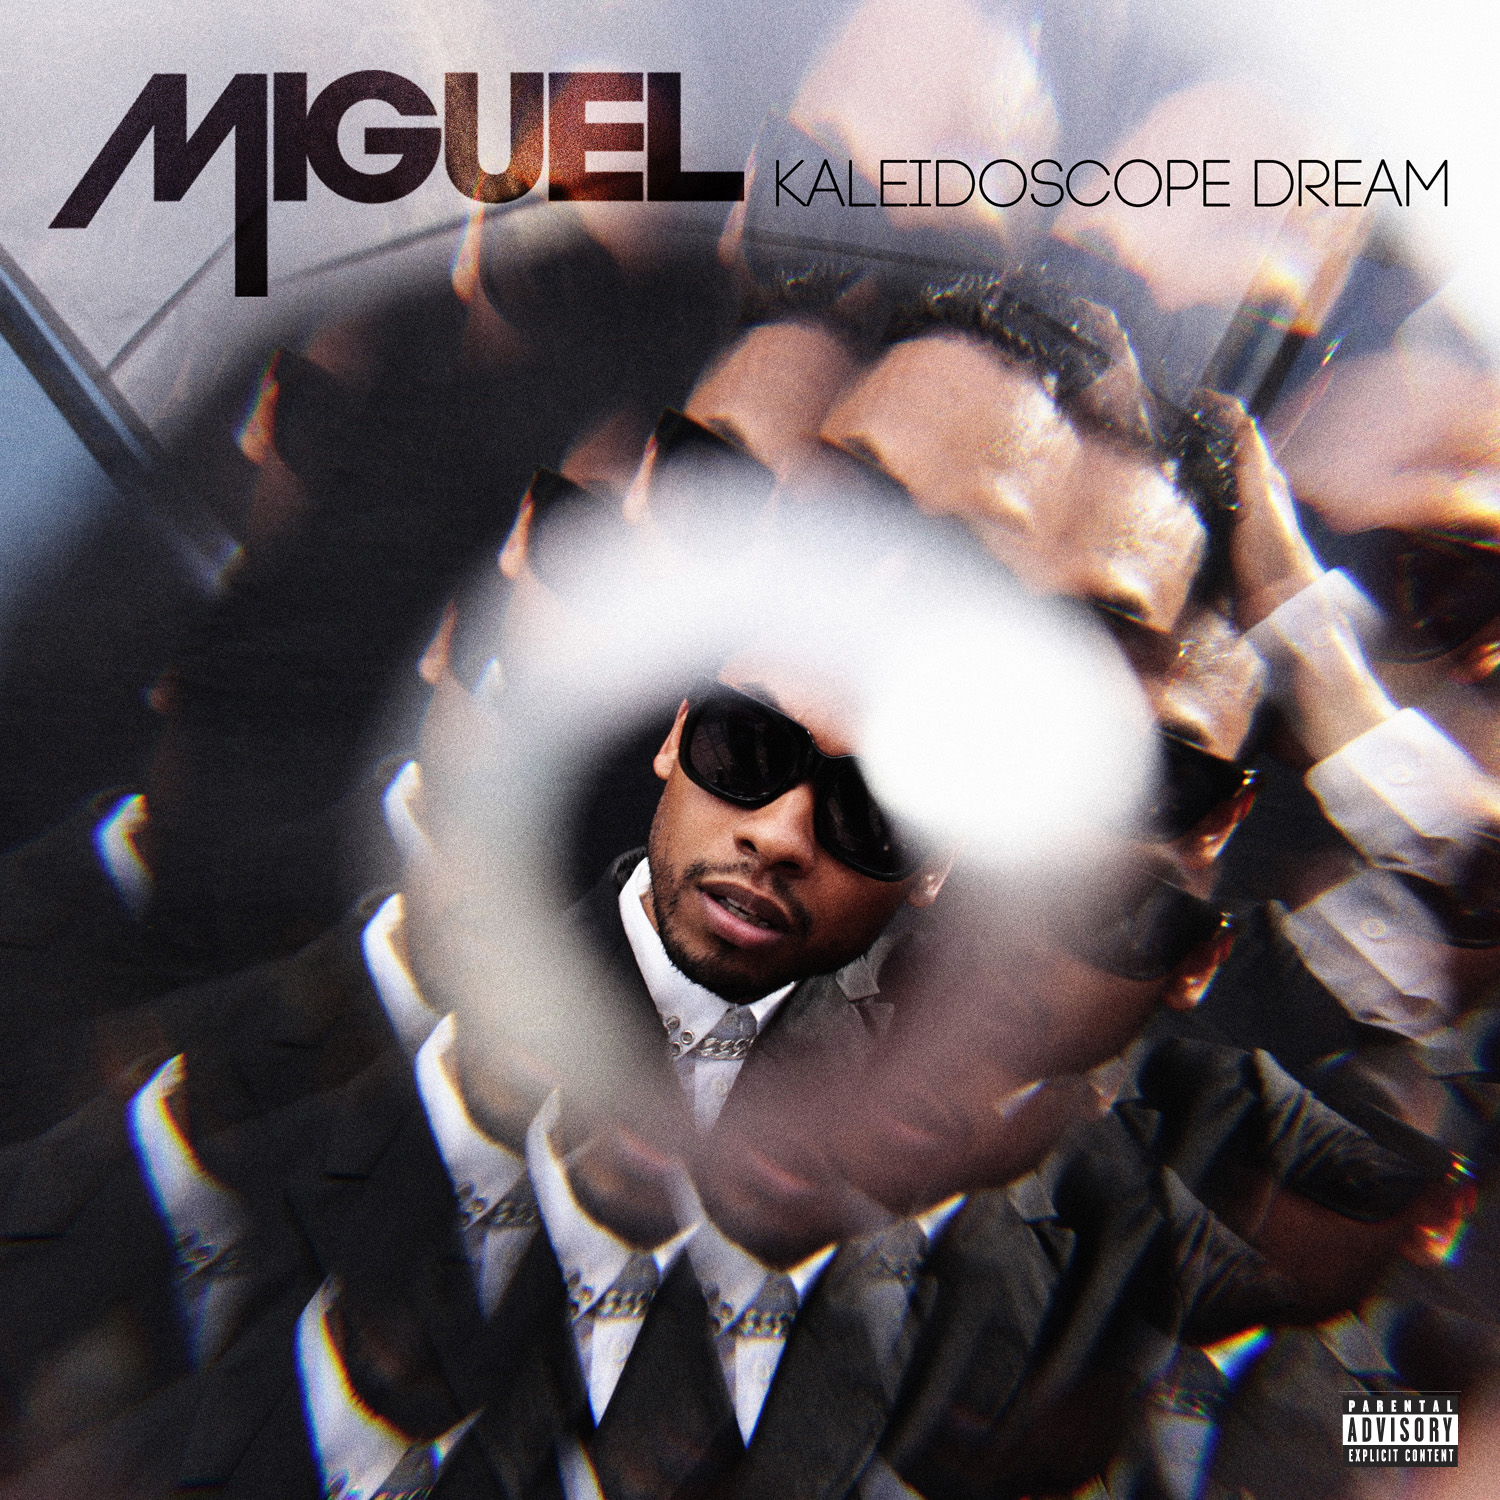 Miguel Kaleidoscope Dream